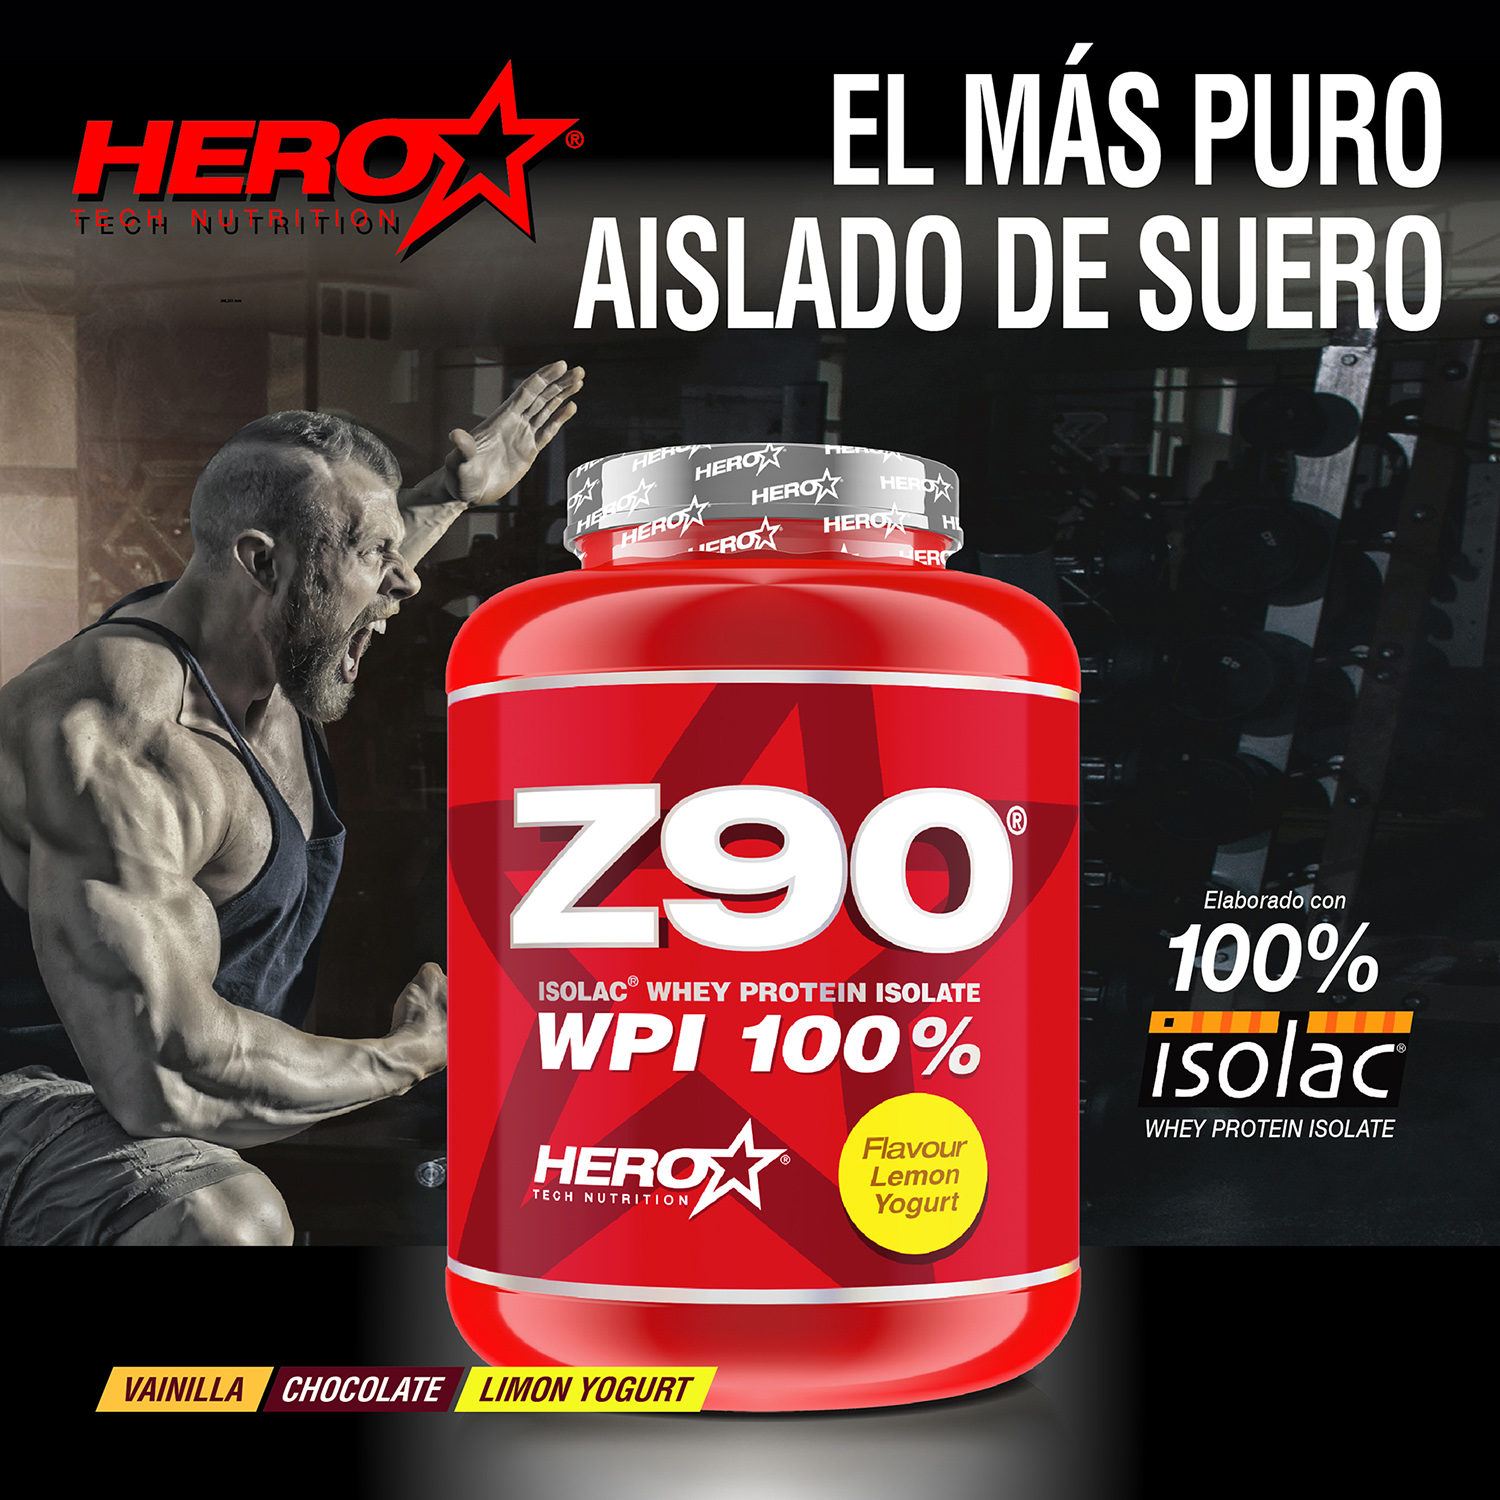 Z90 AISLADO DE SUERO PROTEINA HERO TECH NUTRITION herotechnutrition